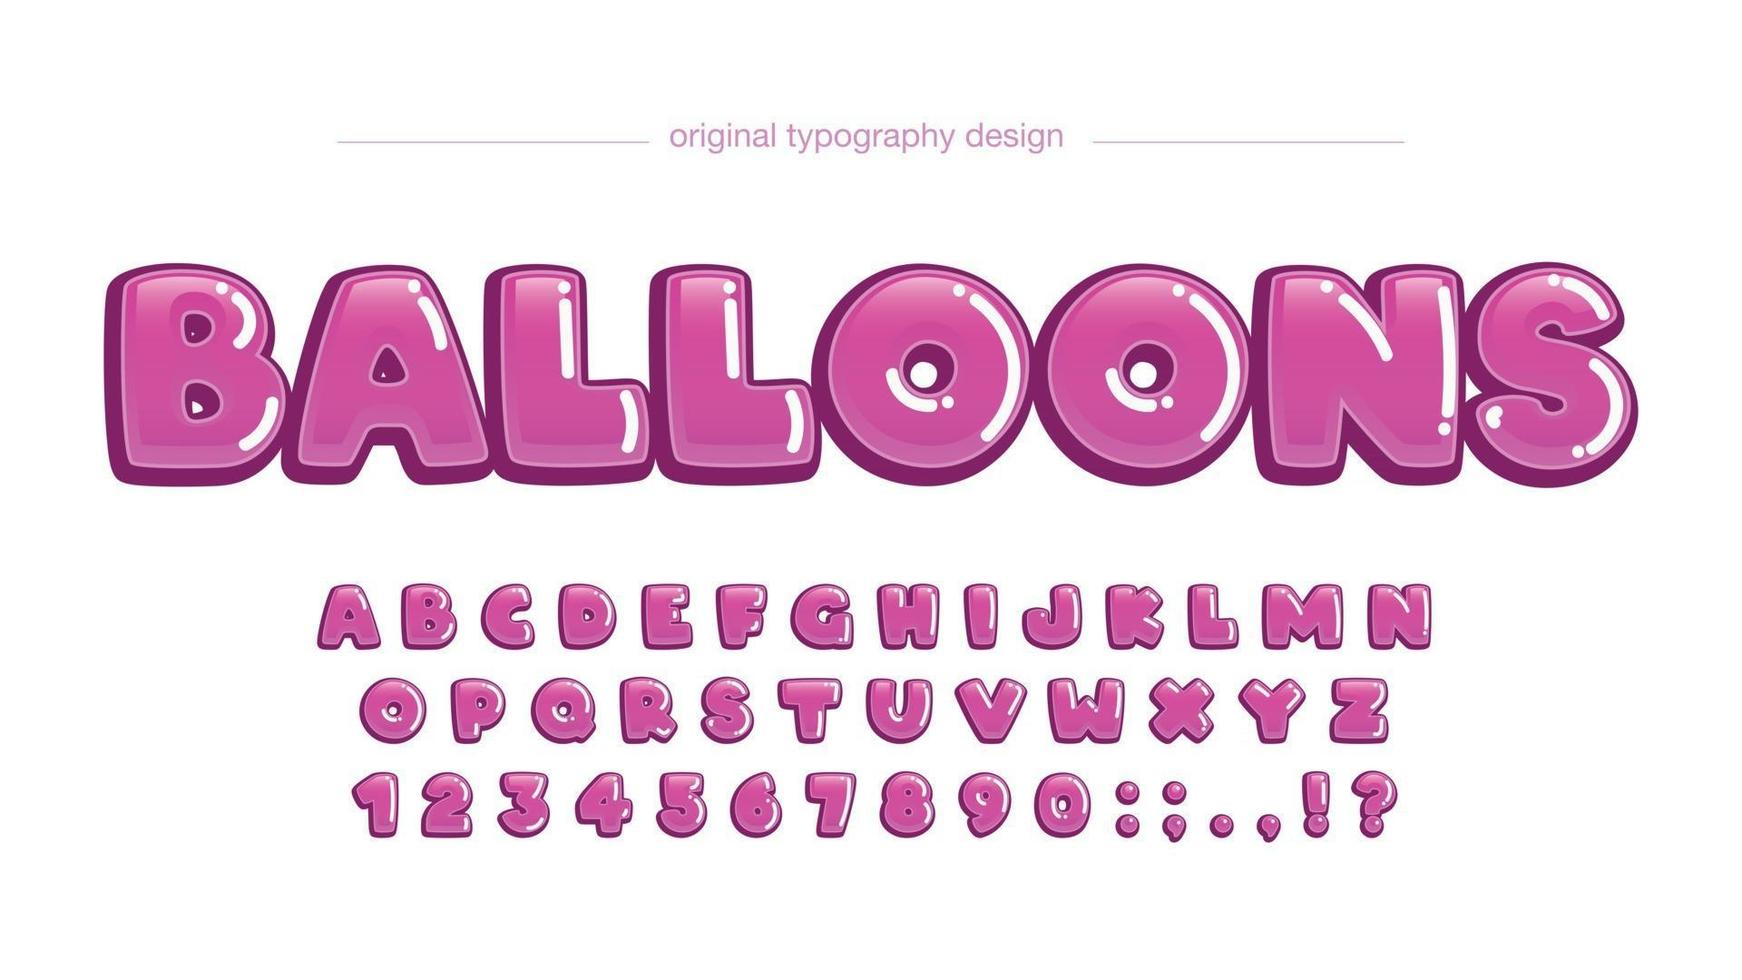 tipografia de cartoon de bolha arredondada rosa vetor